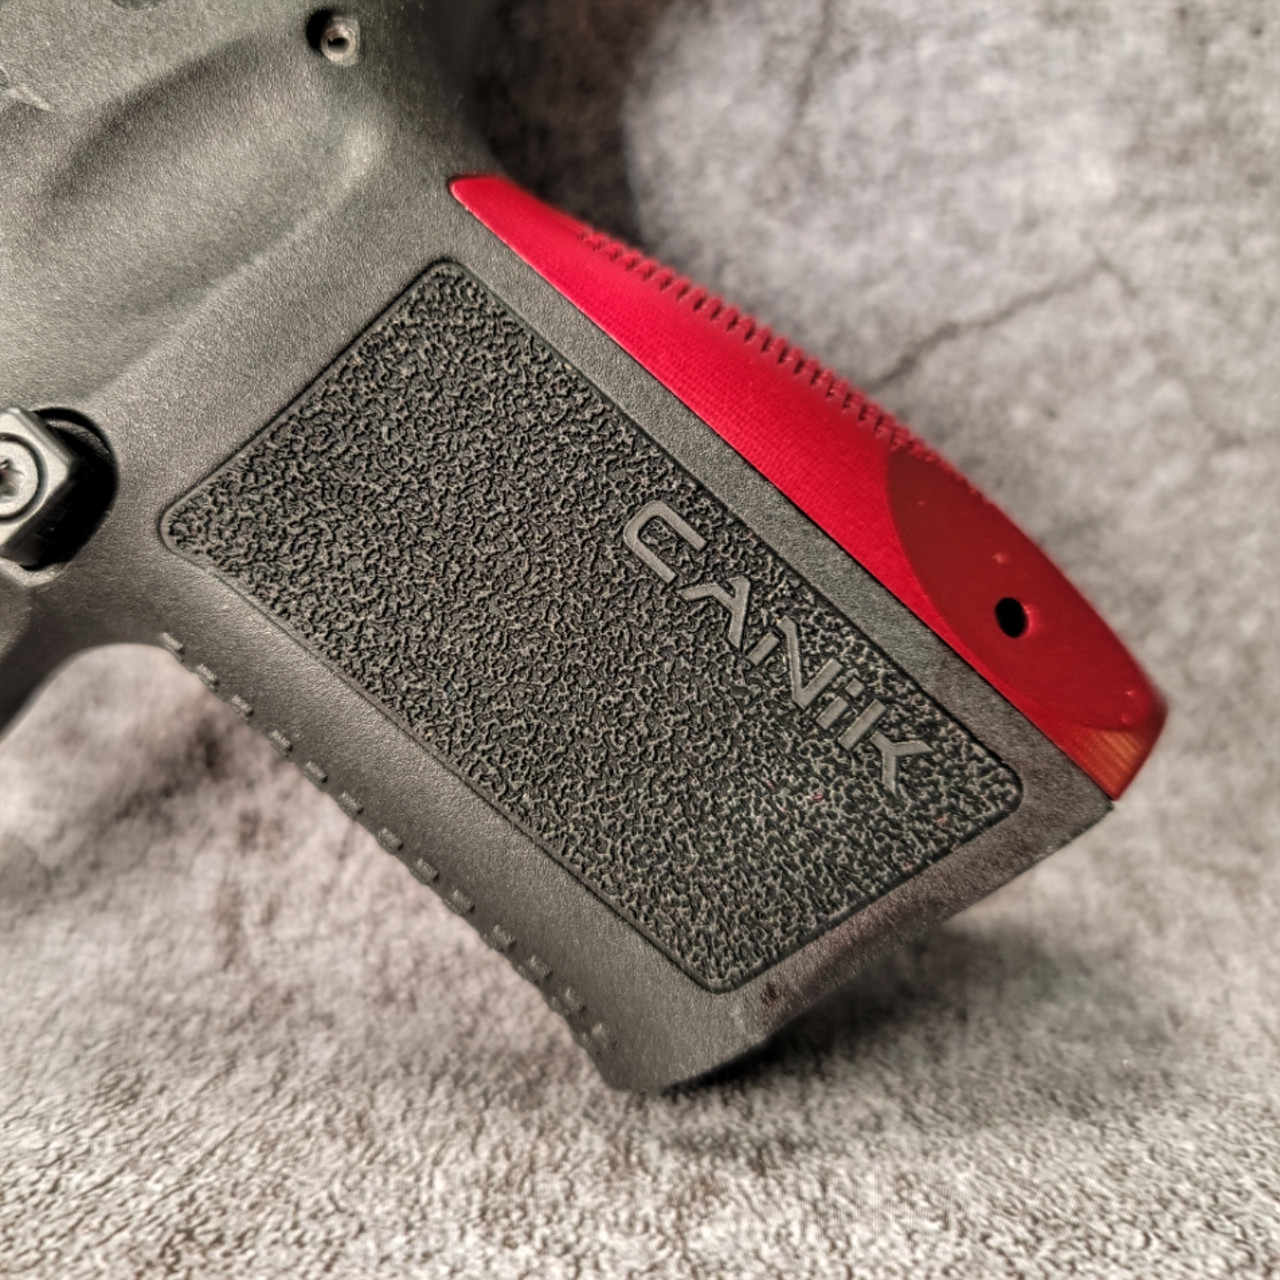 Canik Elite/Mete SF Backstrap Grip panel - Aluminum - Red